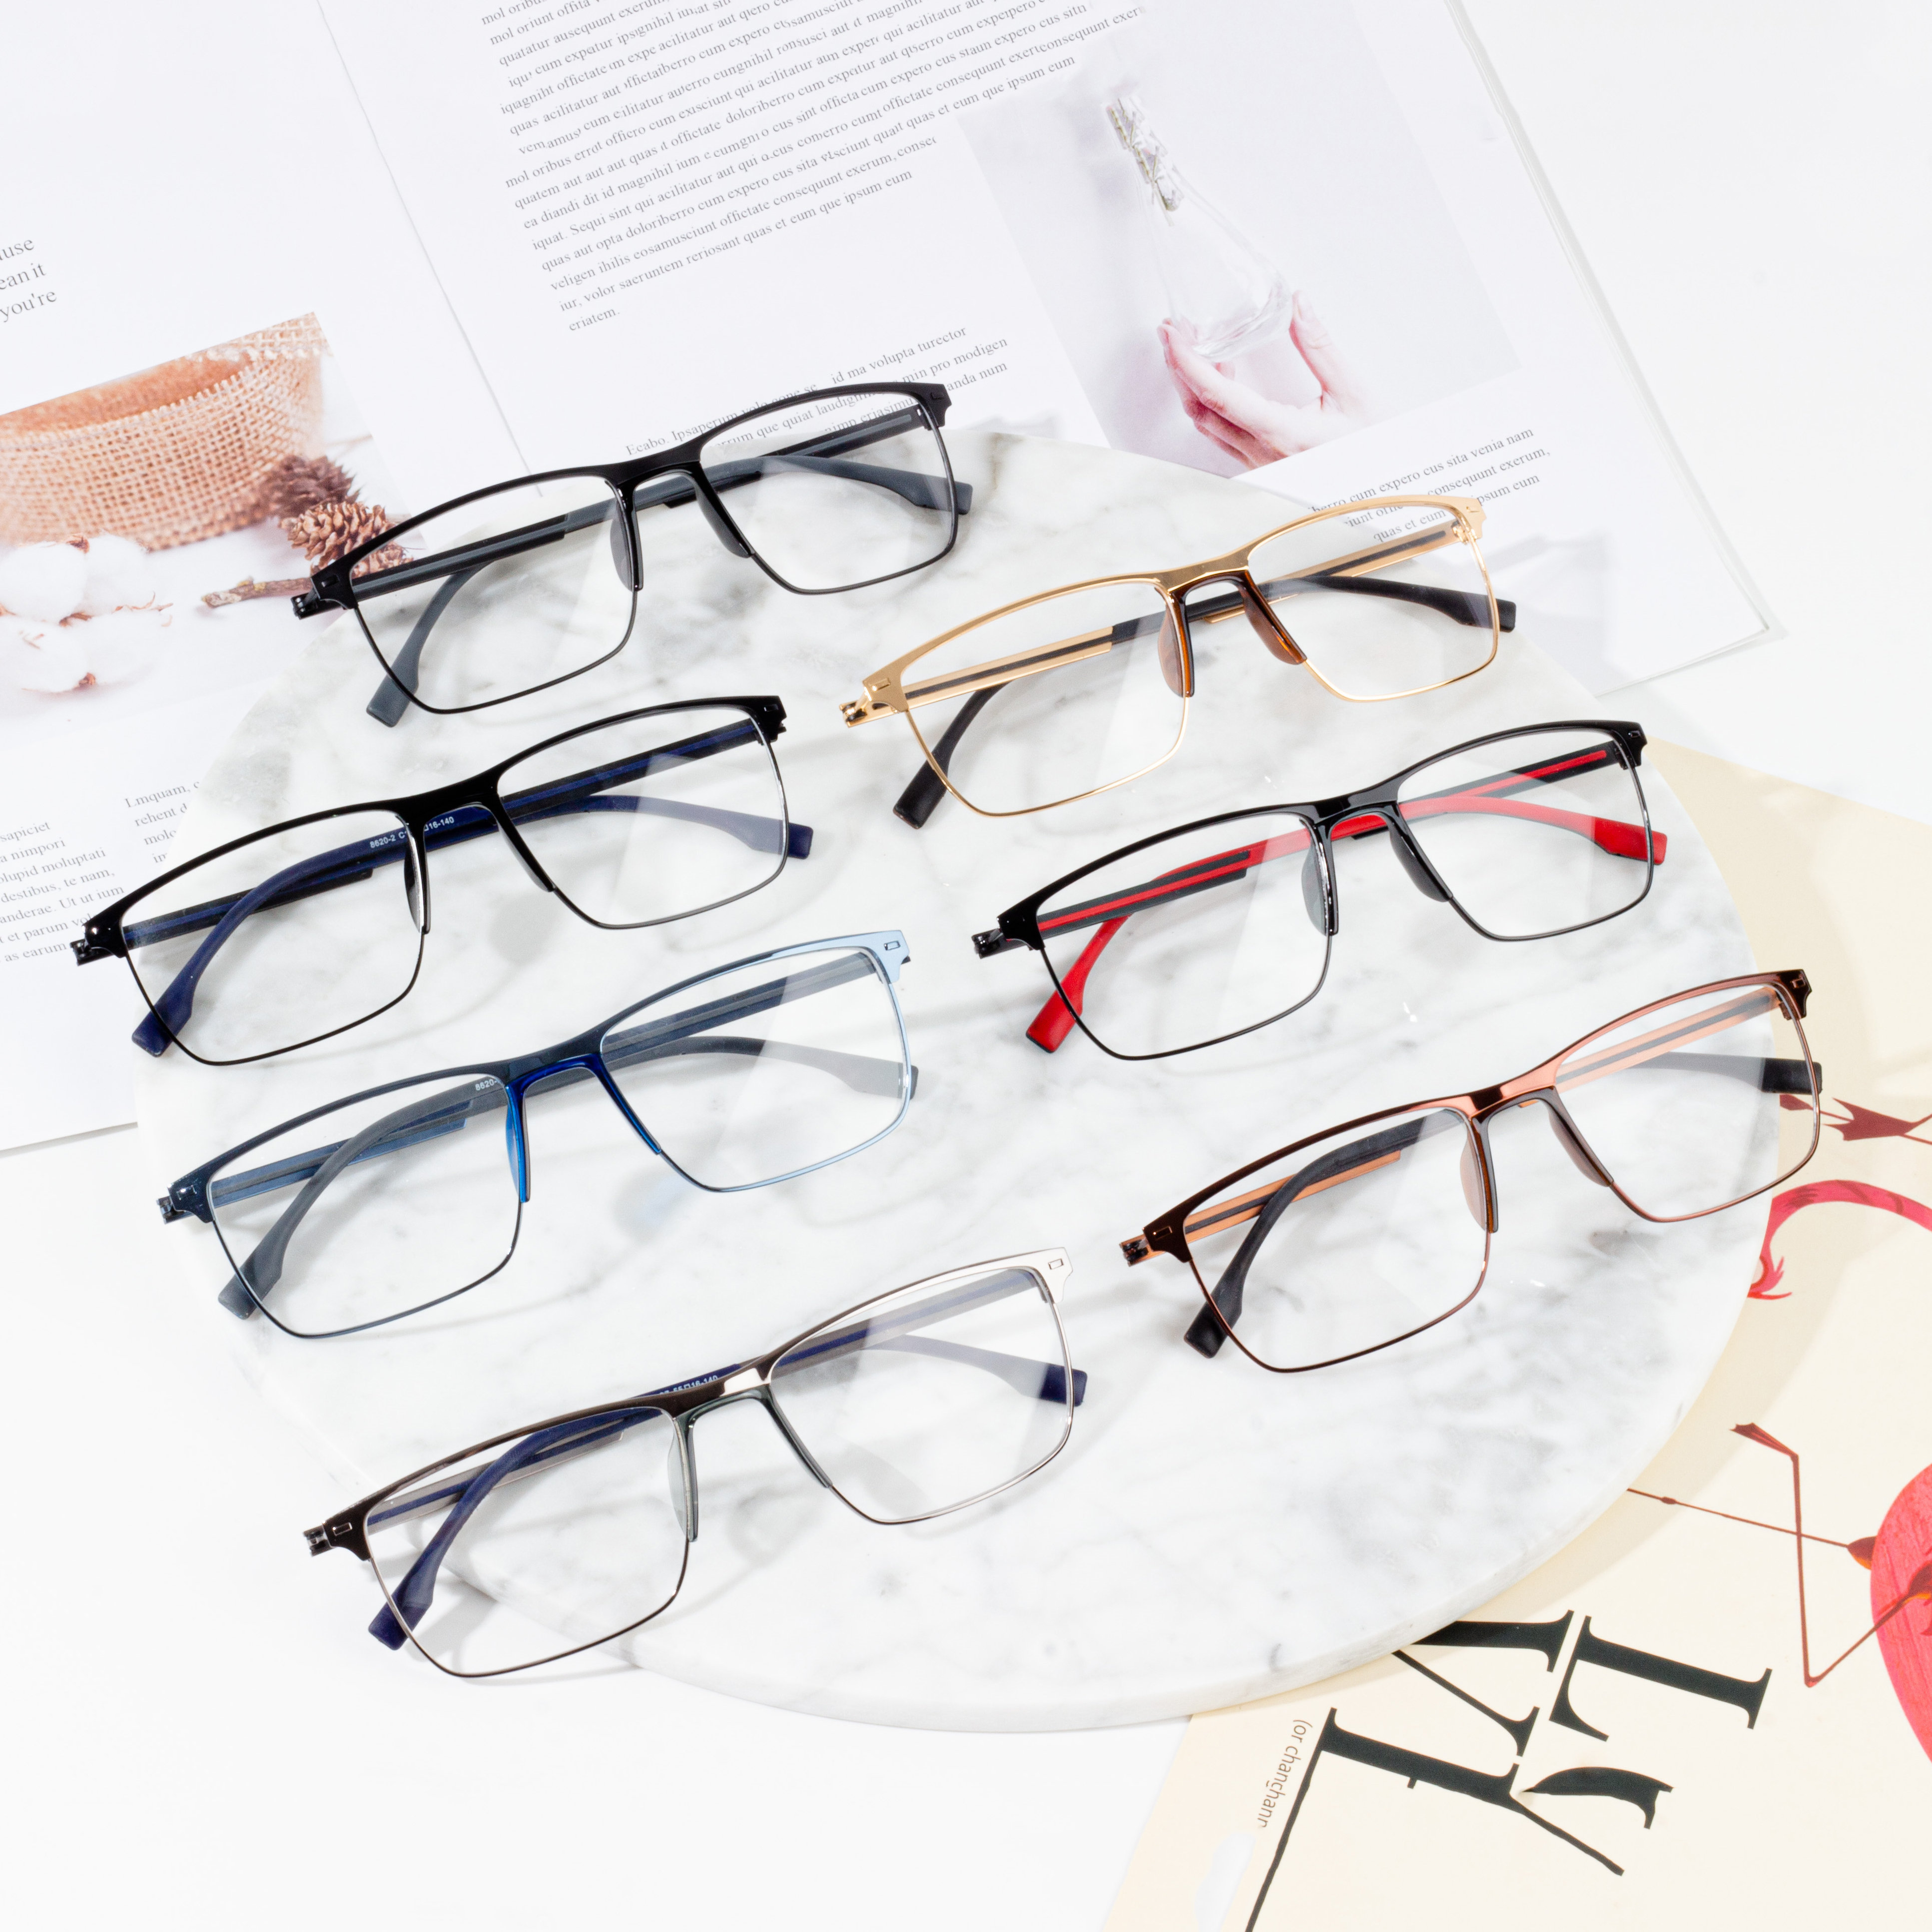 Factory Price For Metal Glasses Frames - Business Glasses Frame For Men optical frame saddle nose pads – HJ EYEWEAR